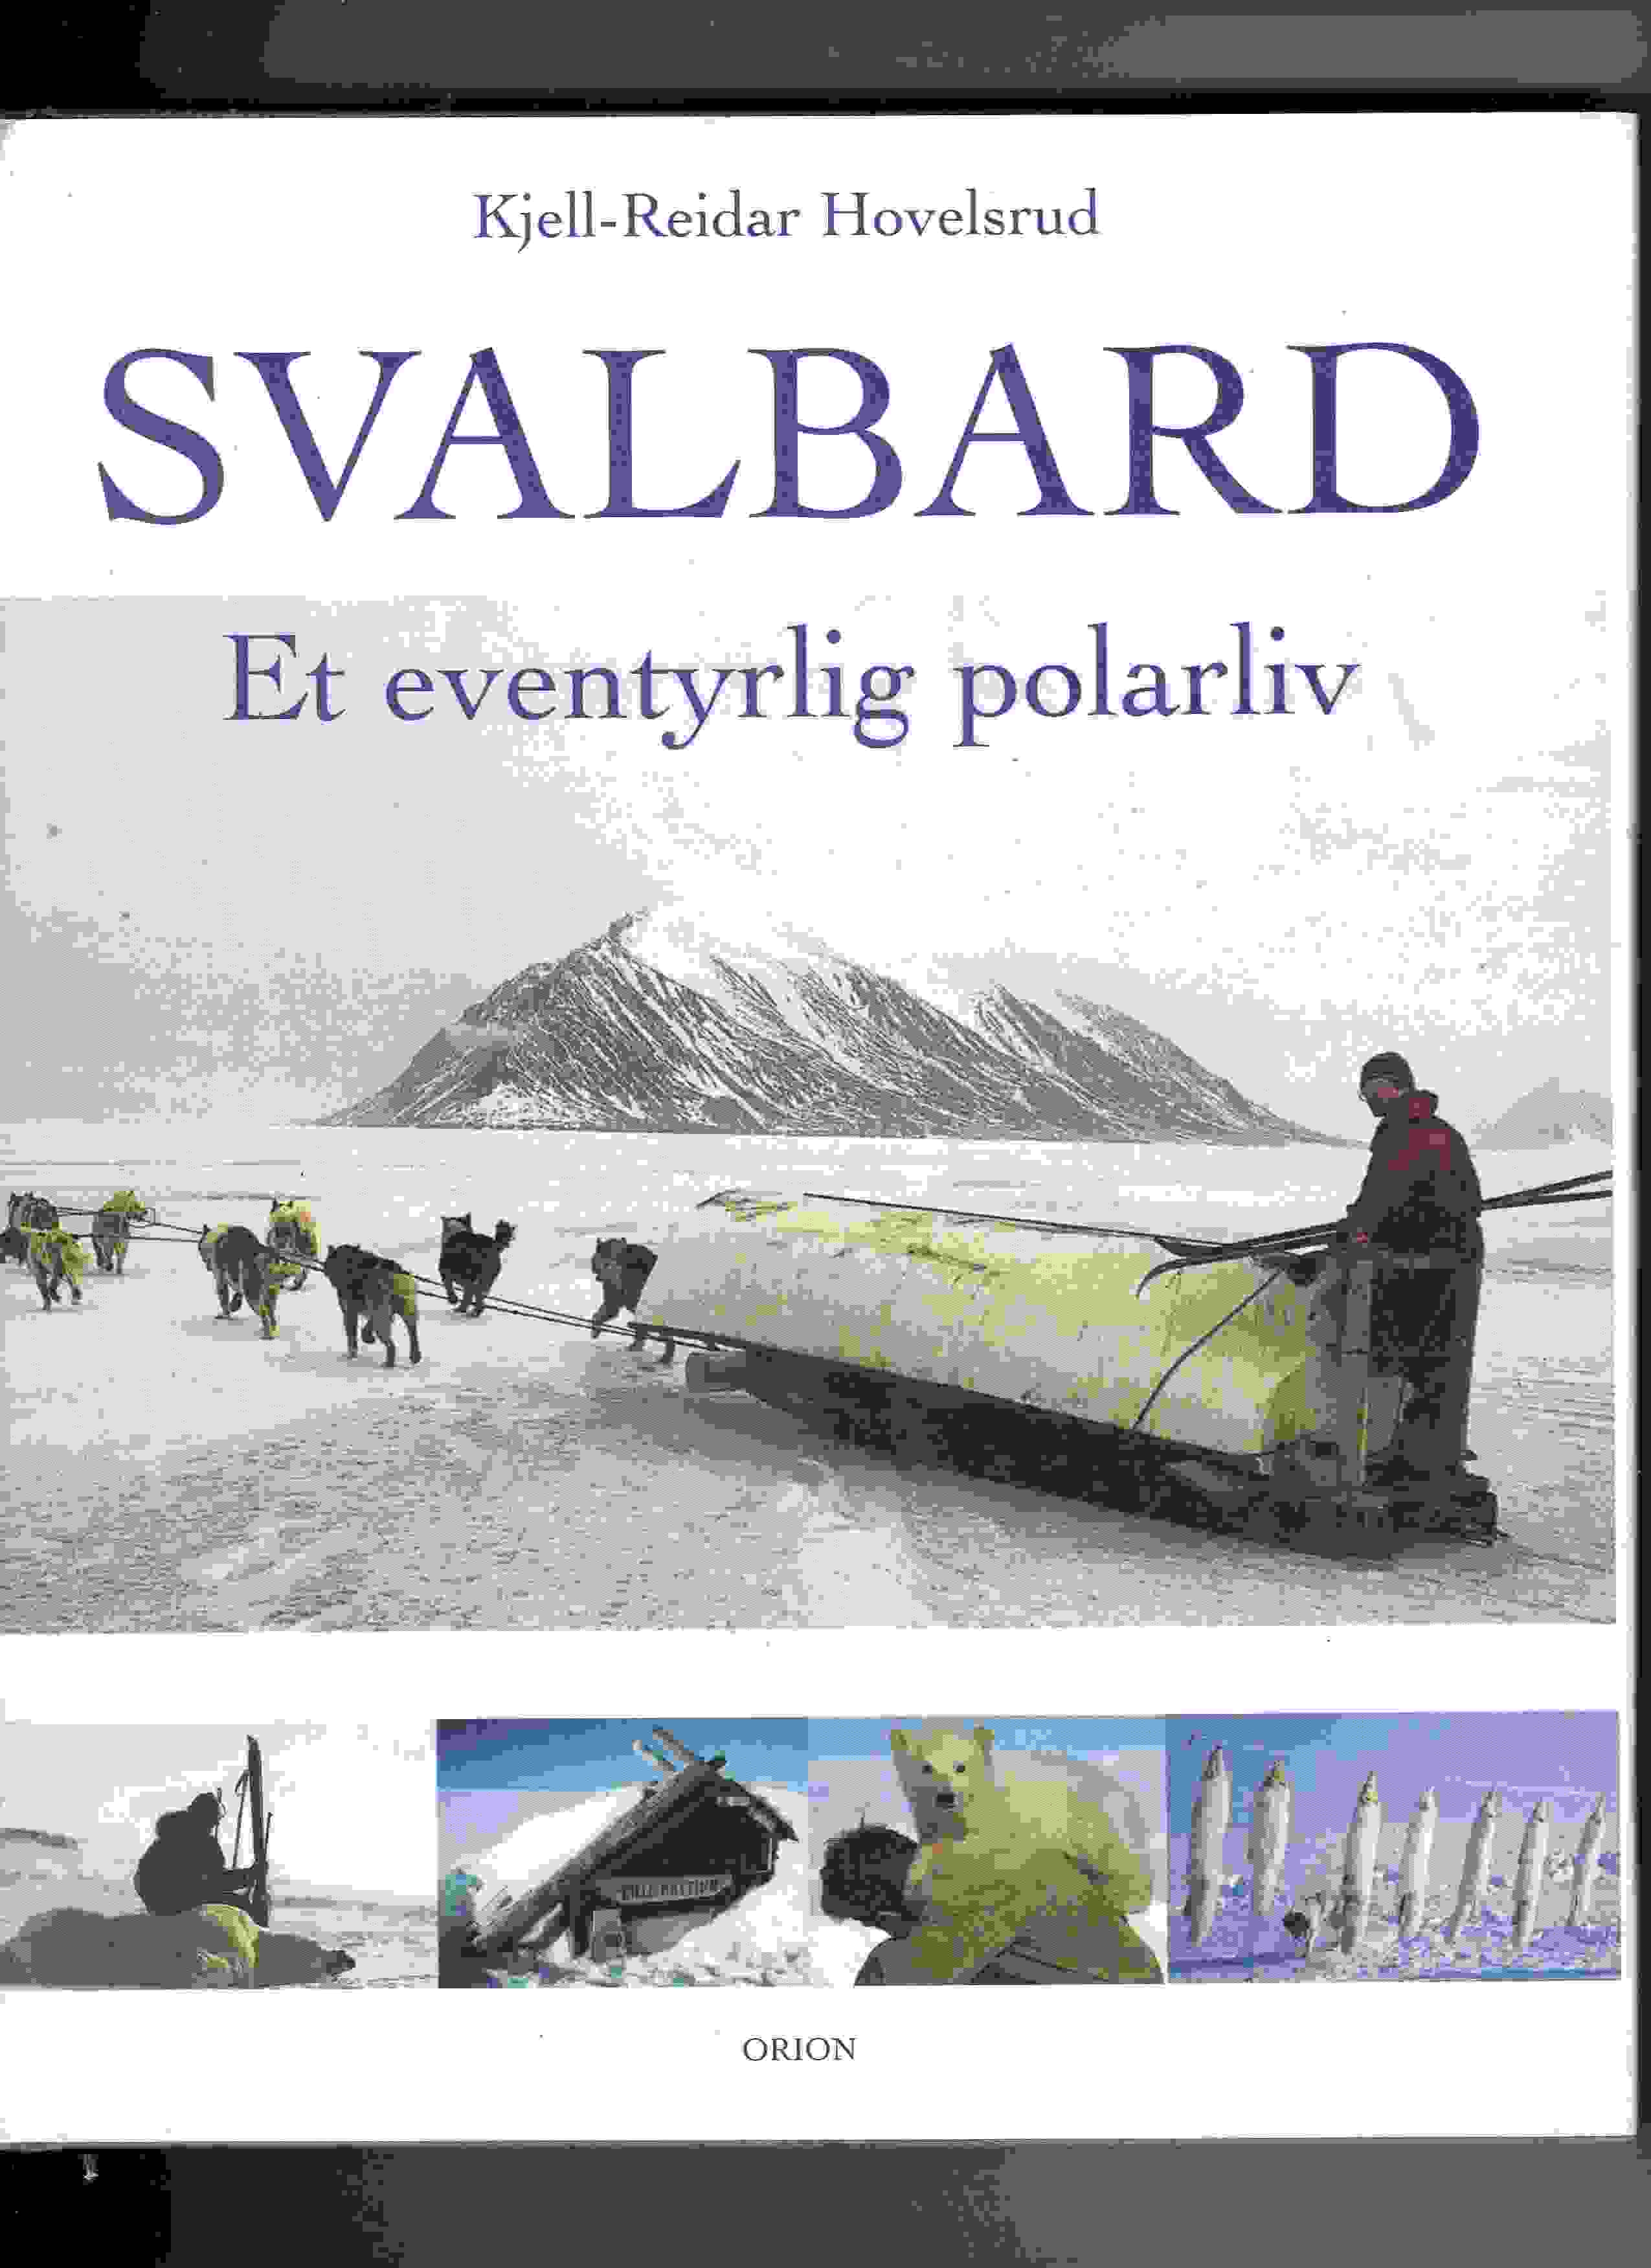 Svalbard - Et eventyrlig polarliv, Kjell-Reidar Hovelsrud, Orion 2000 Smussb. pen O2